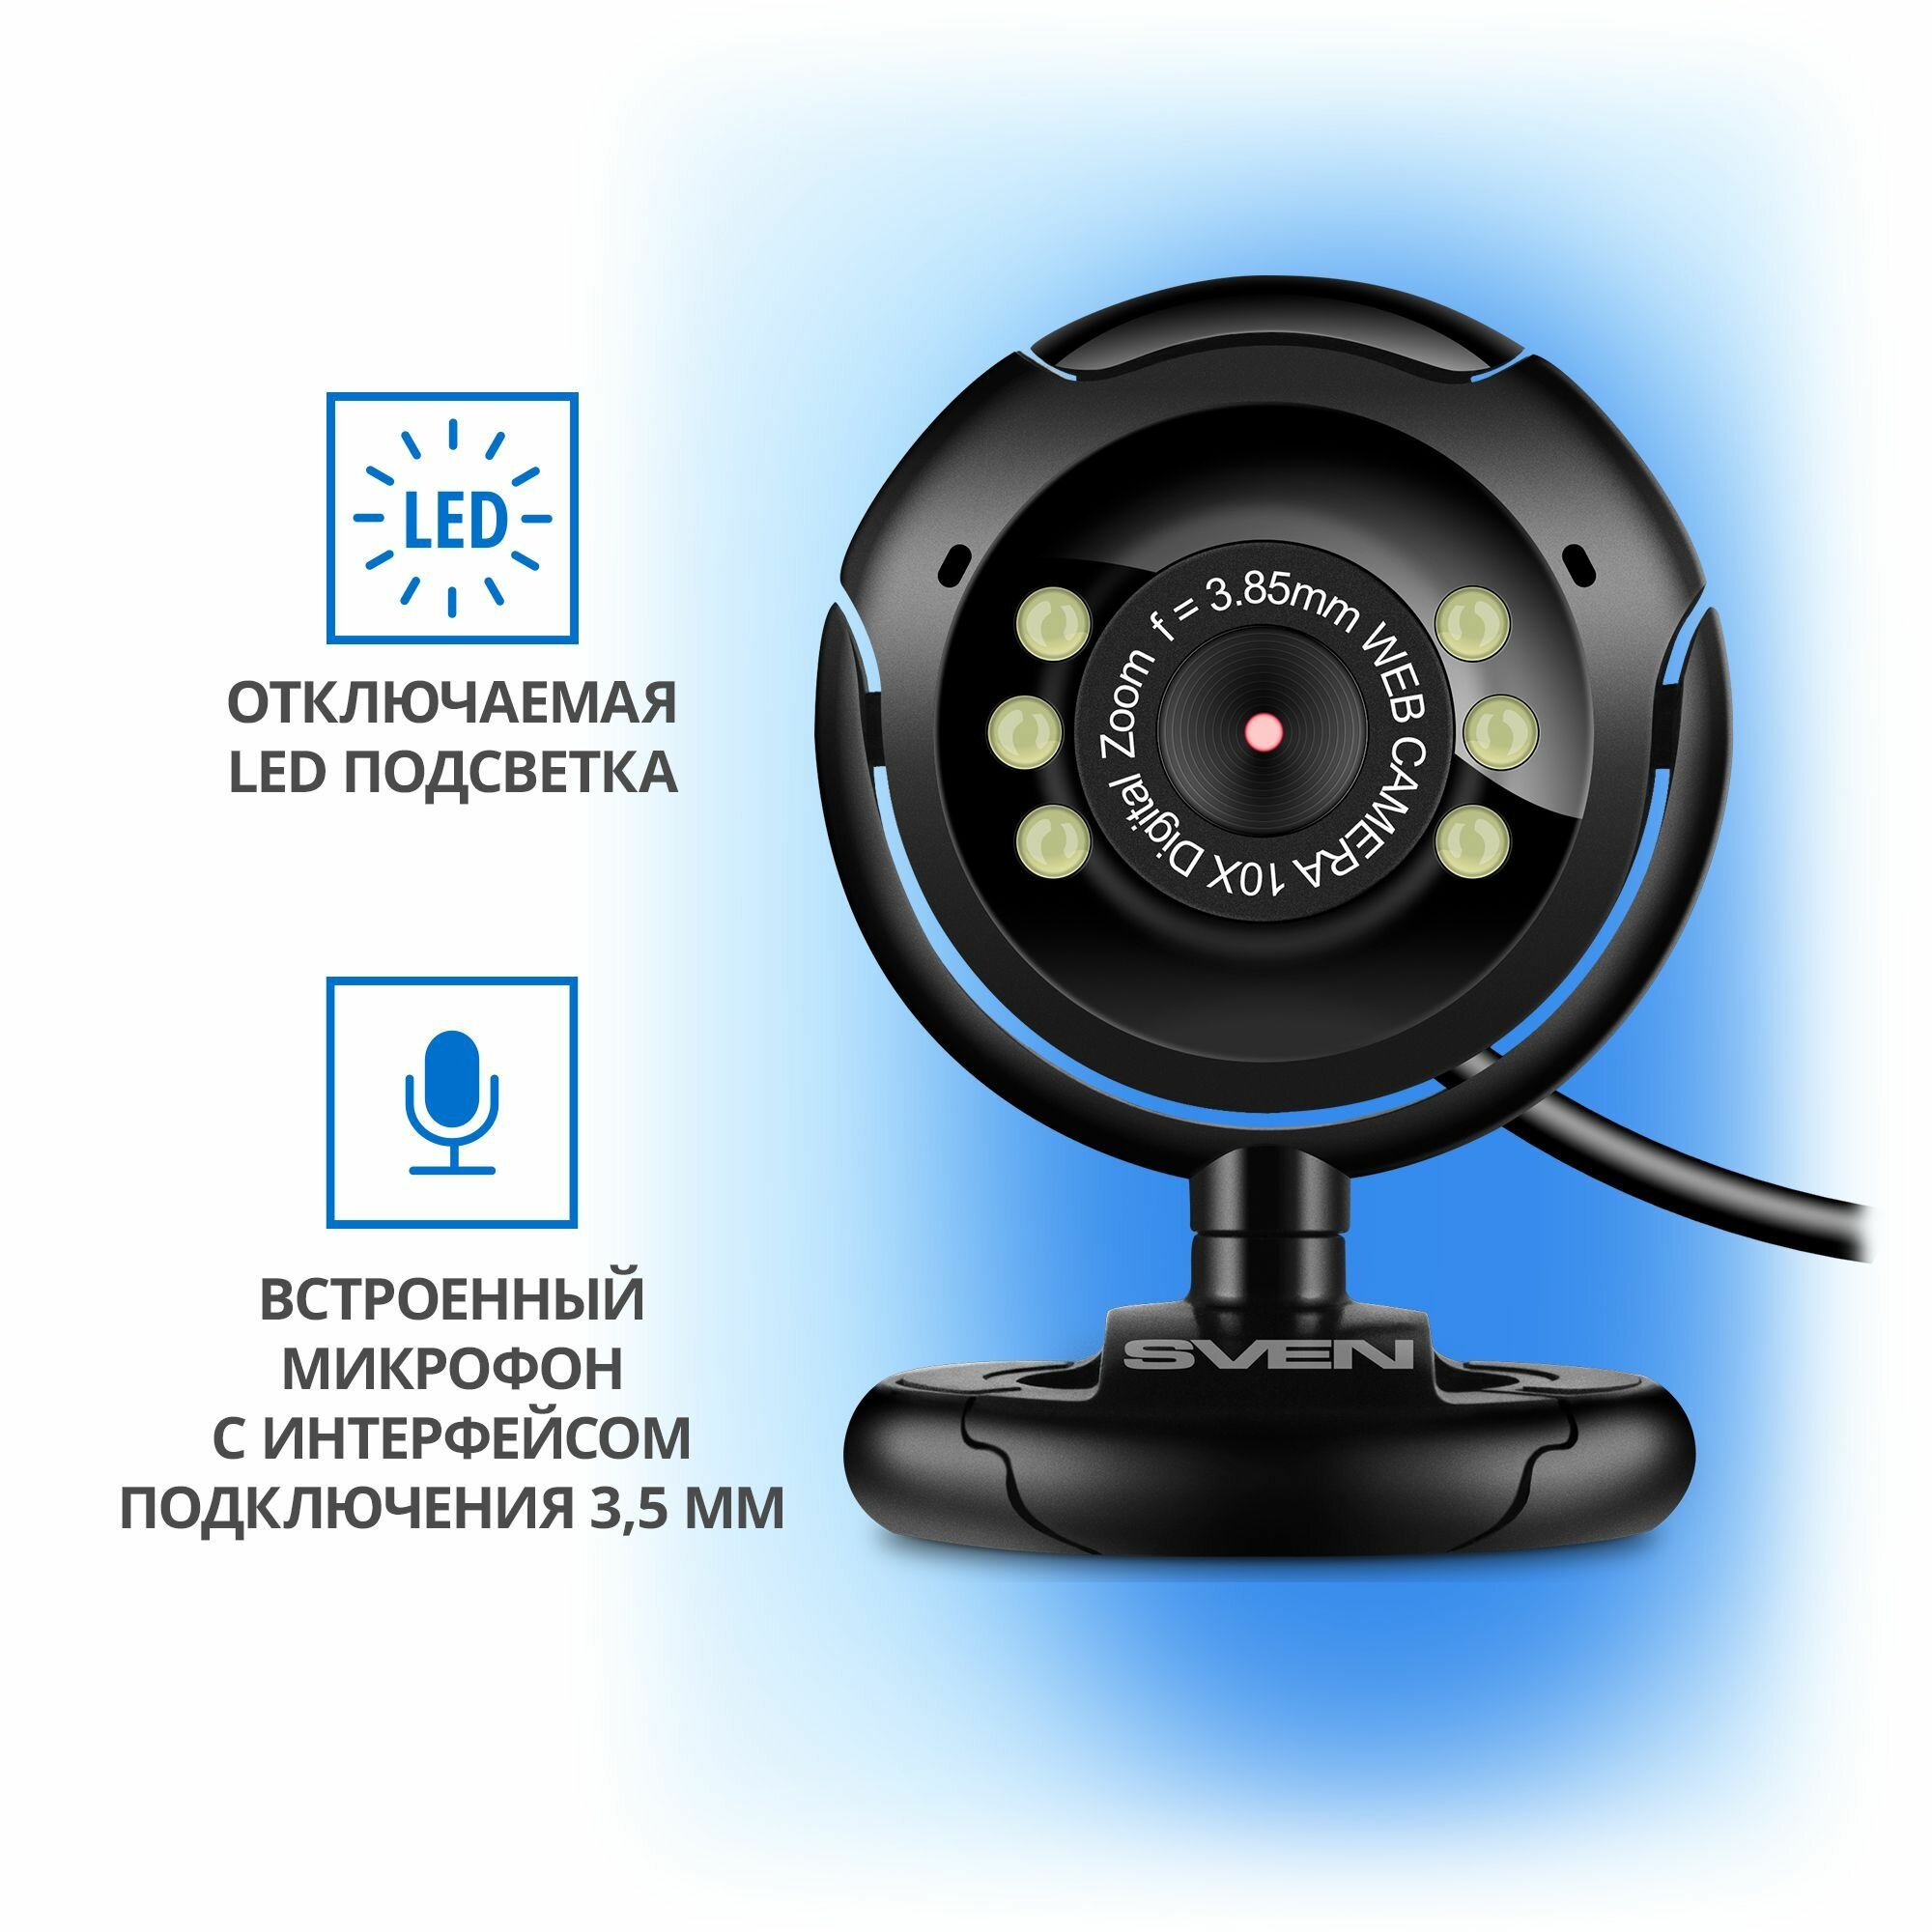 Веб-камера SVEN IC-302 03 мегапикселя 30 кадров в секунду клипса-подставка микрофон jack-35мм блистерная упаковка